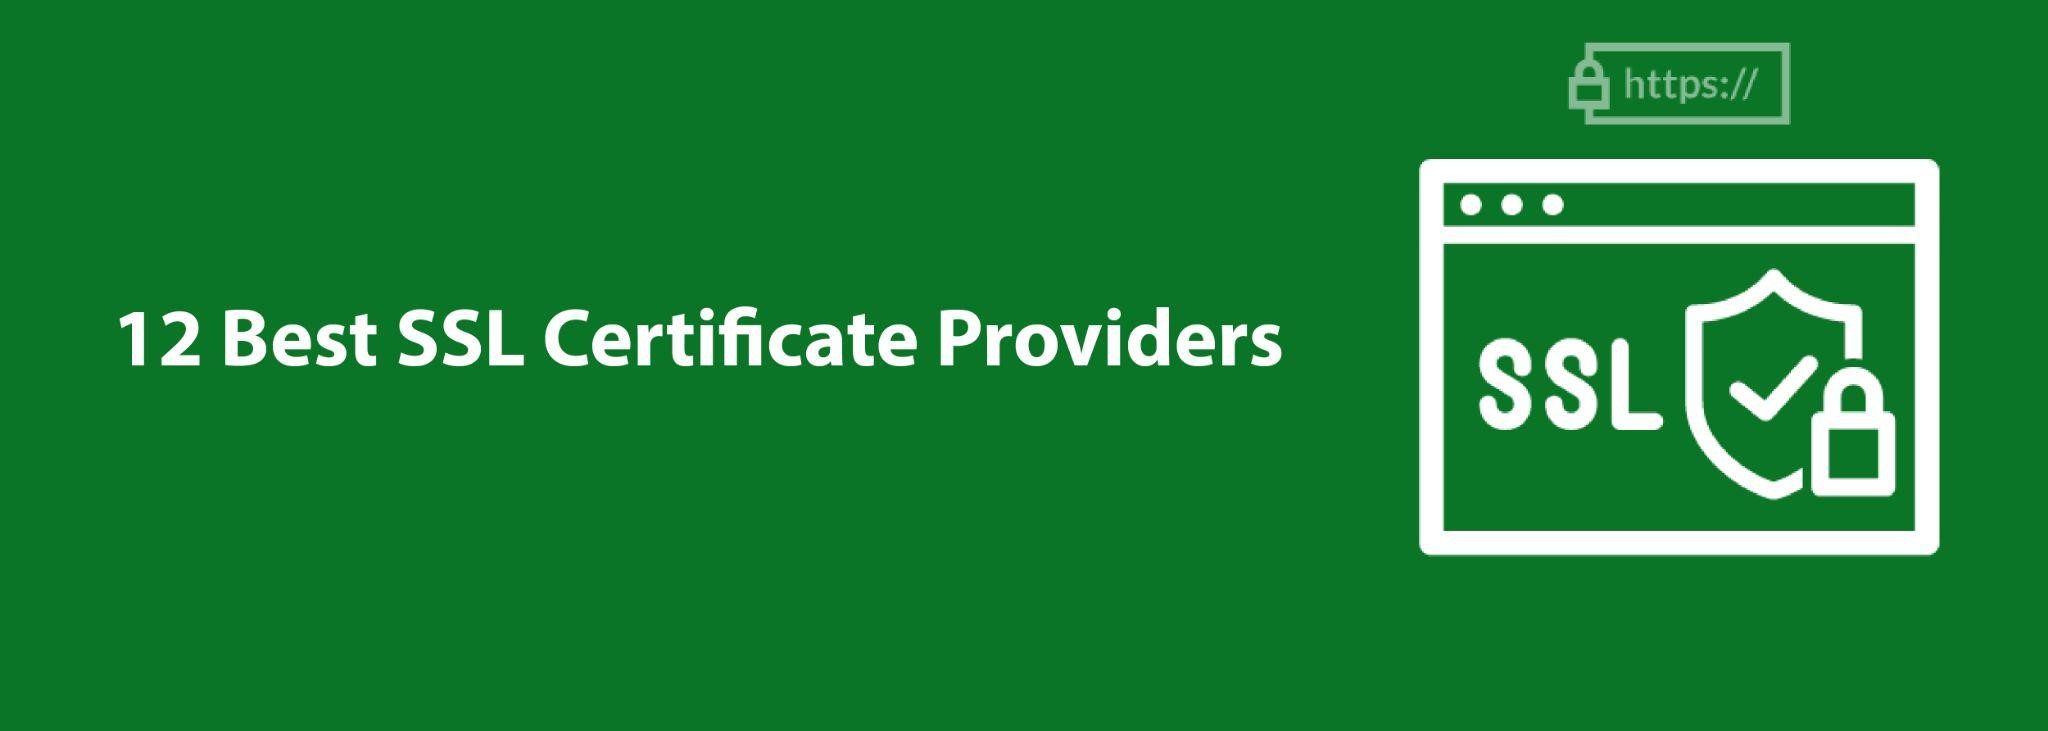 Top 12 Best SSL Certificate Providers in 2022